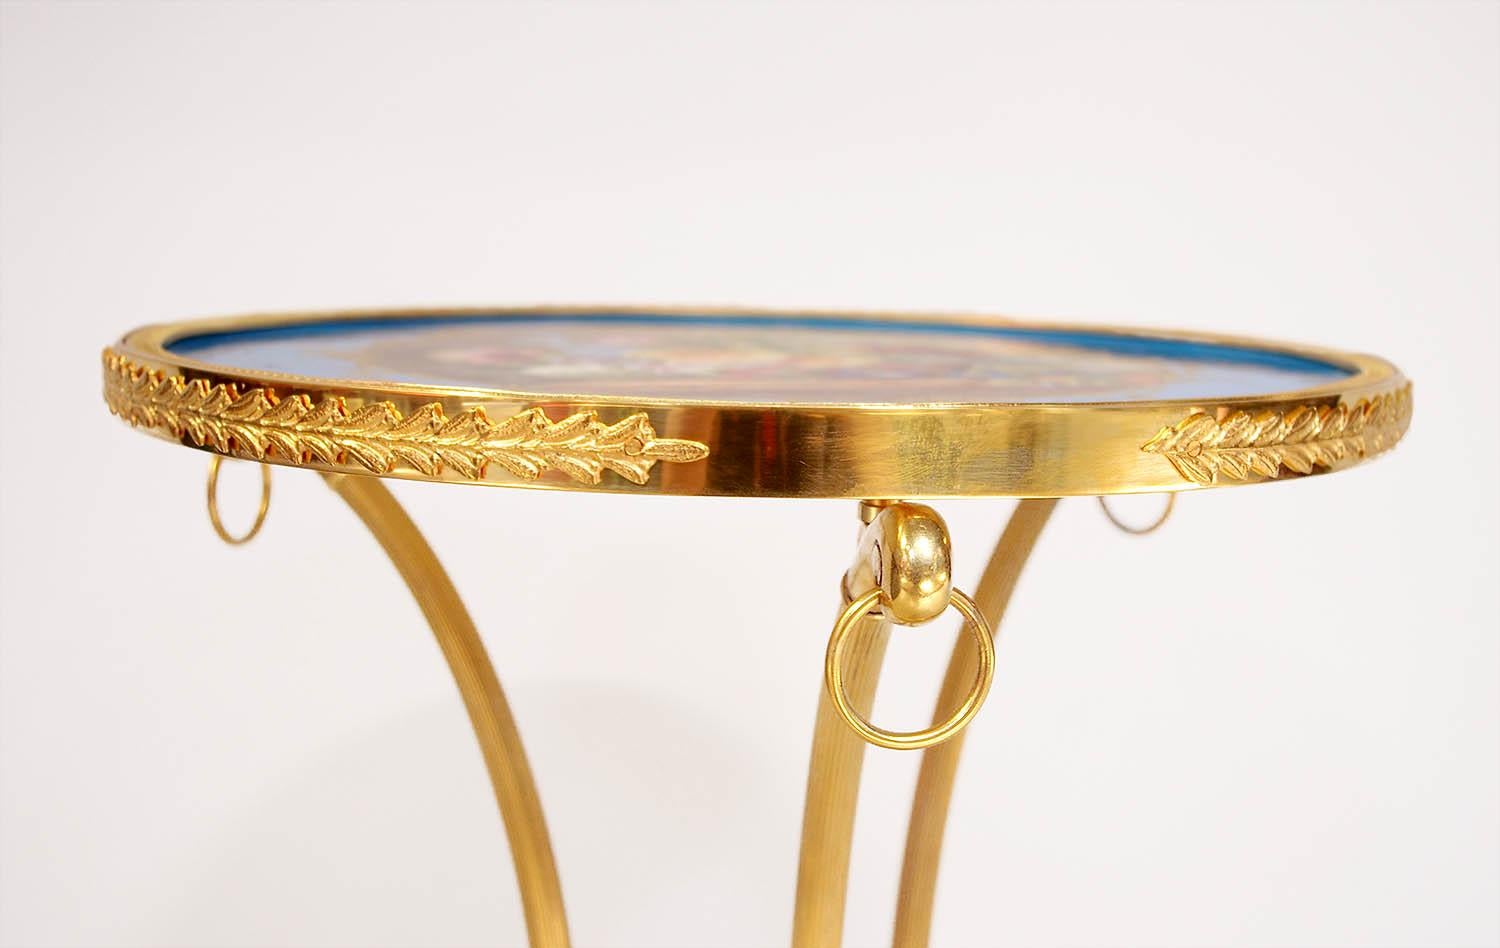 Directoire-Stil athenienne Stand Tisch in gemeißelt und vergoldeter Bronze, bestehend aus einem Dreibein geriffelt und verjüngt Unterstützung auf Löwentatze Füße. Sie sind unten durch einen konkaven Träger, der einen Ständer auf Kugelfüßen bildet,